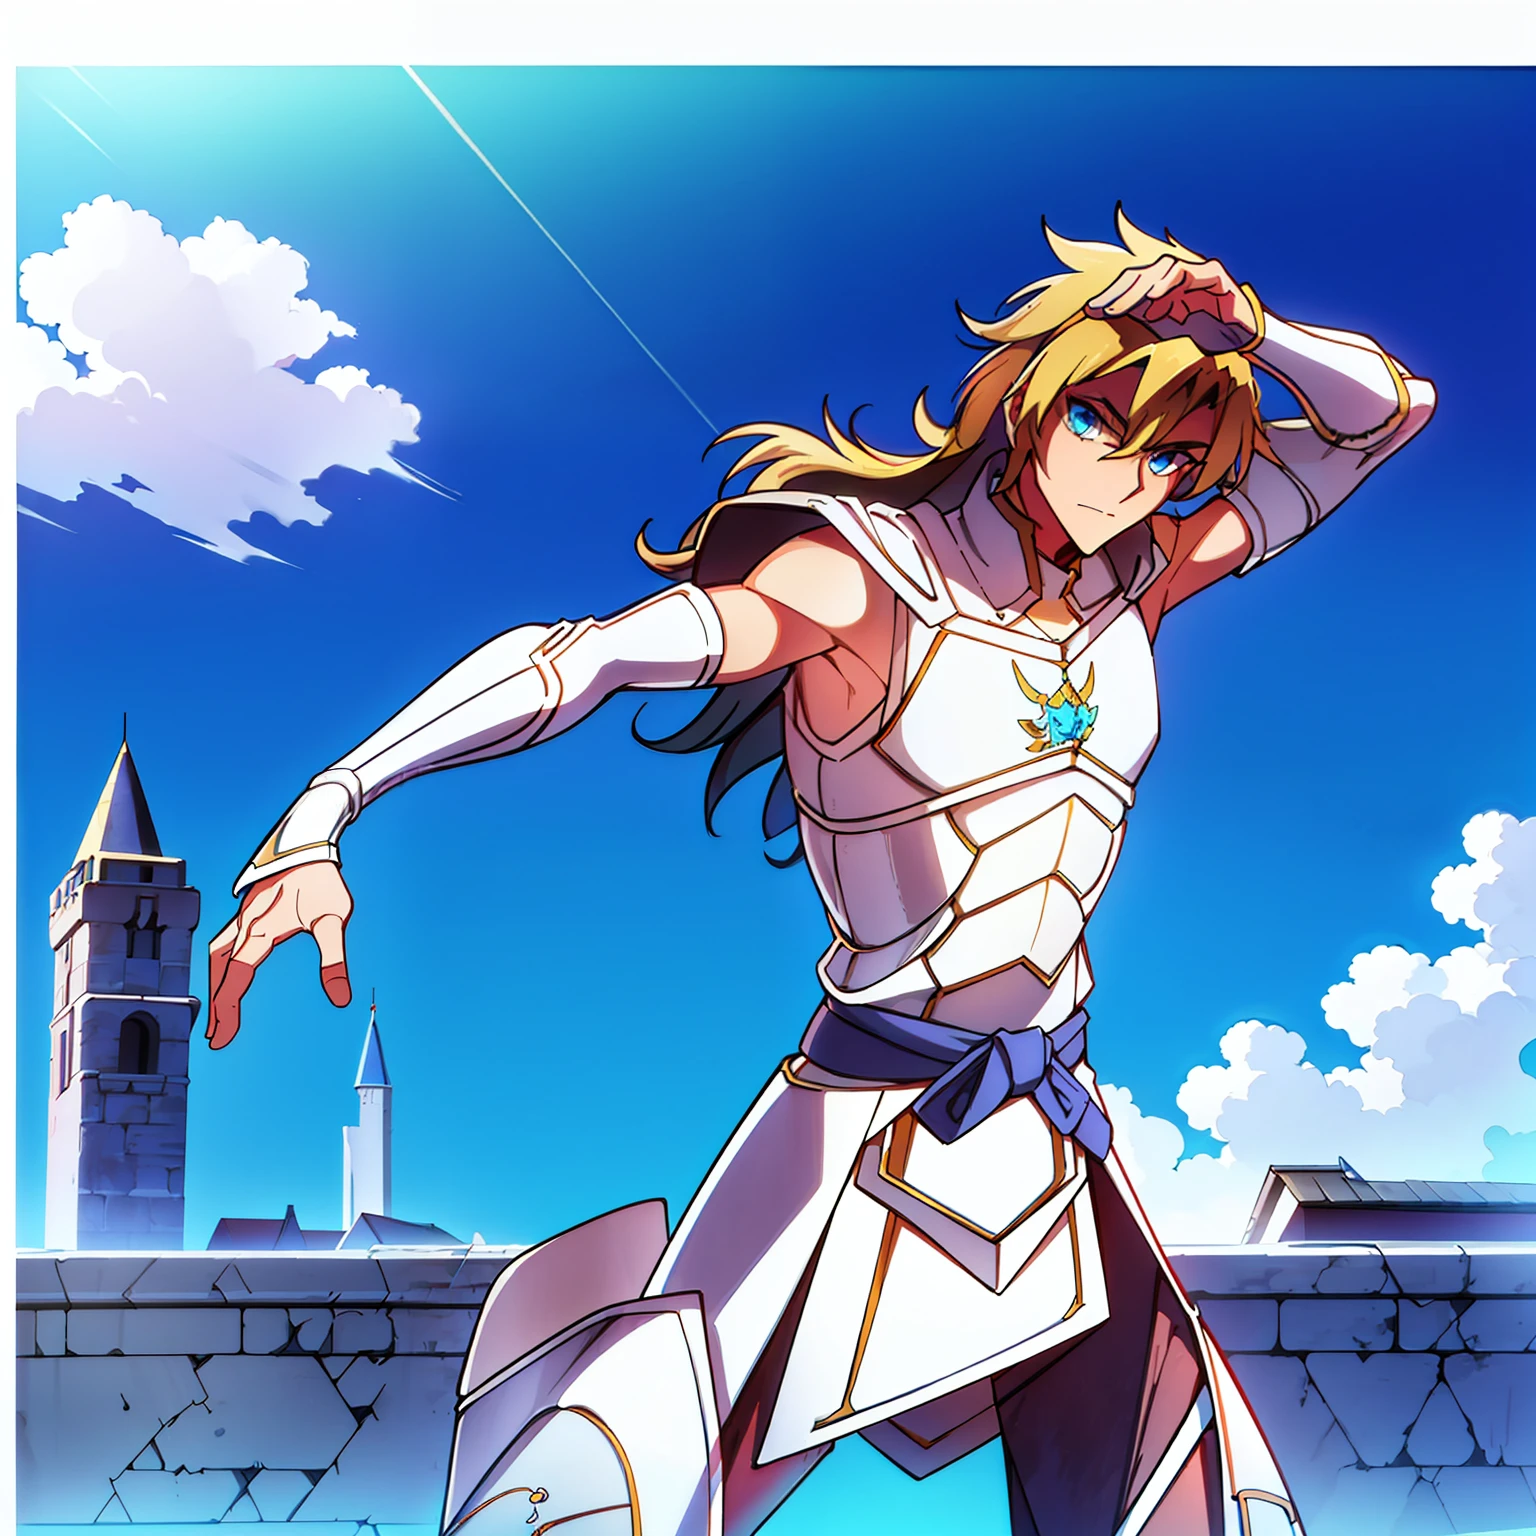 Um homem de 30 anos, com um corpo atlético, cabelos loiros médio-longos, olhos azuis, usa armadura de chapa de aço, posa heroicamente e fica do lado de fora de um castelo